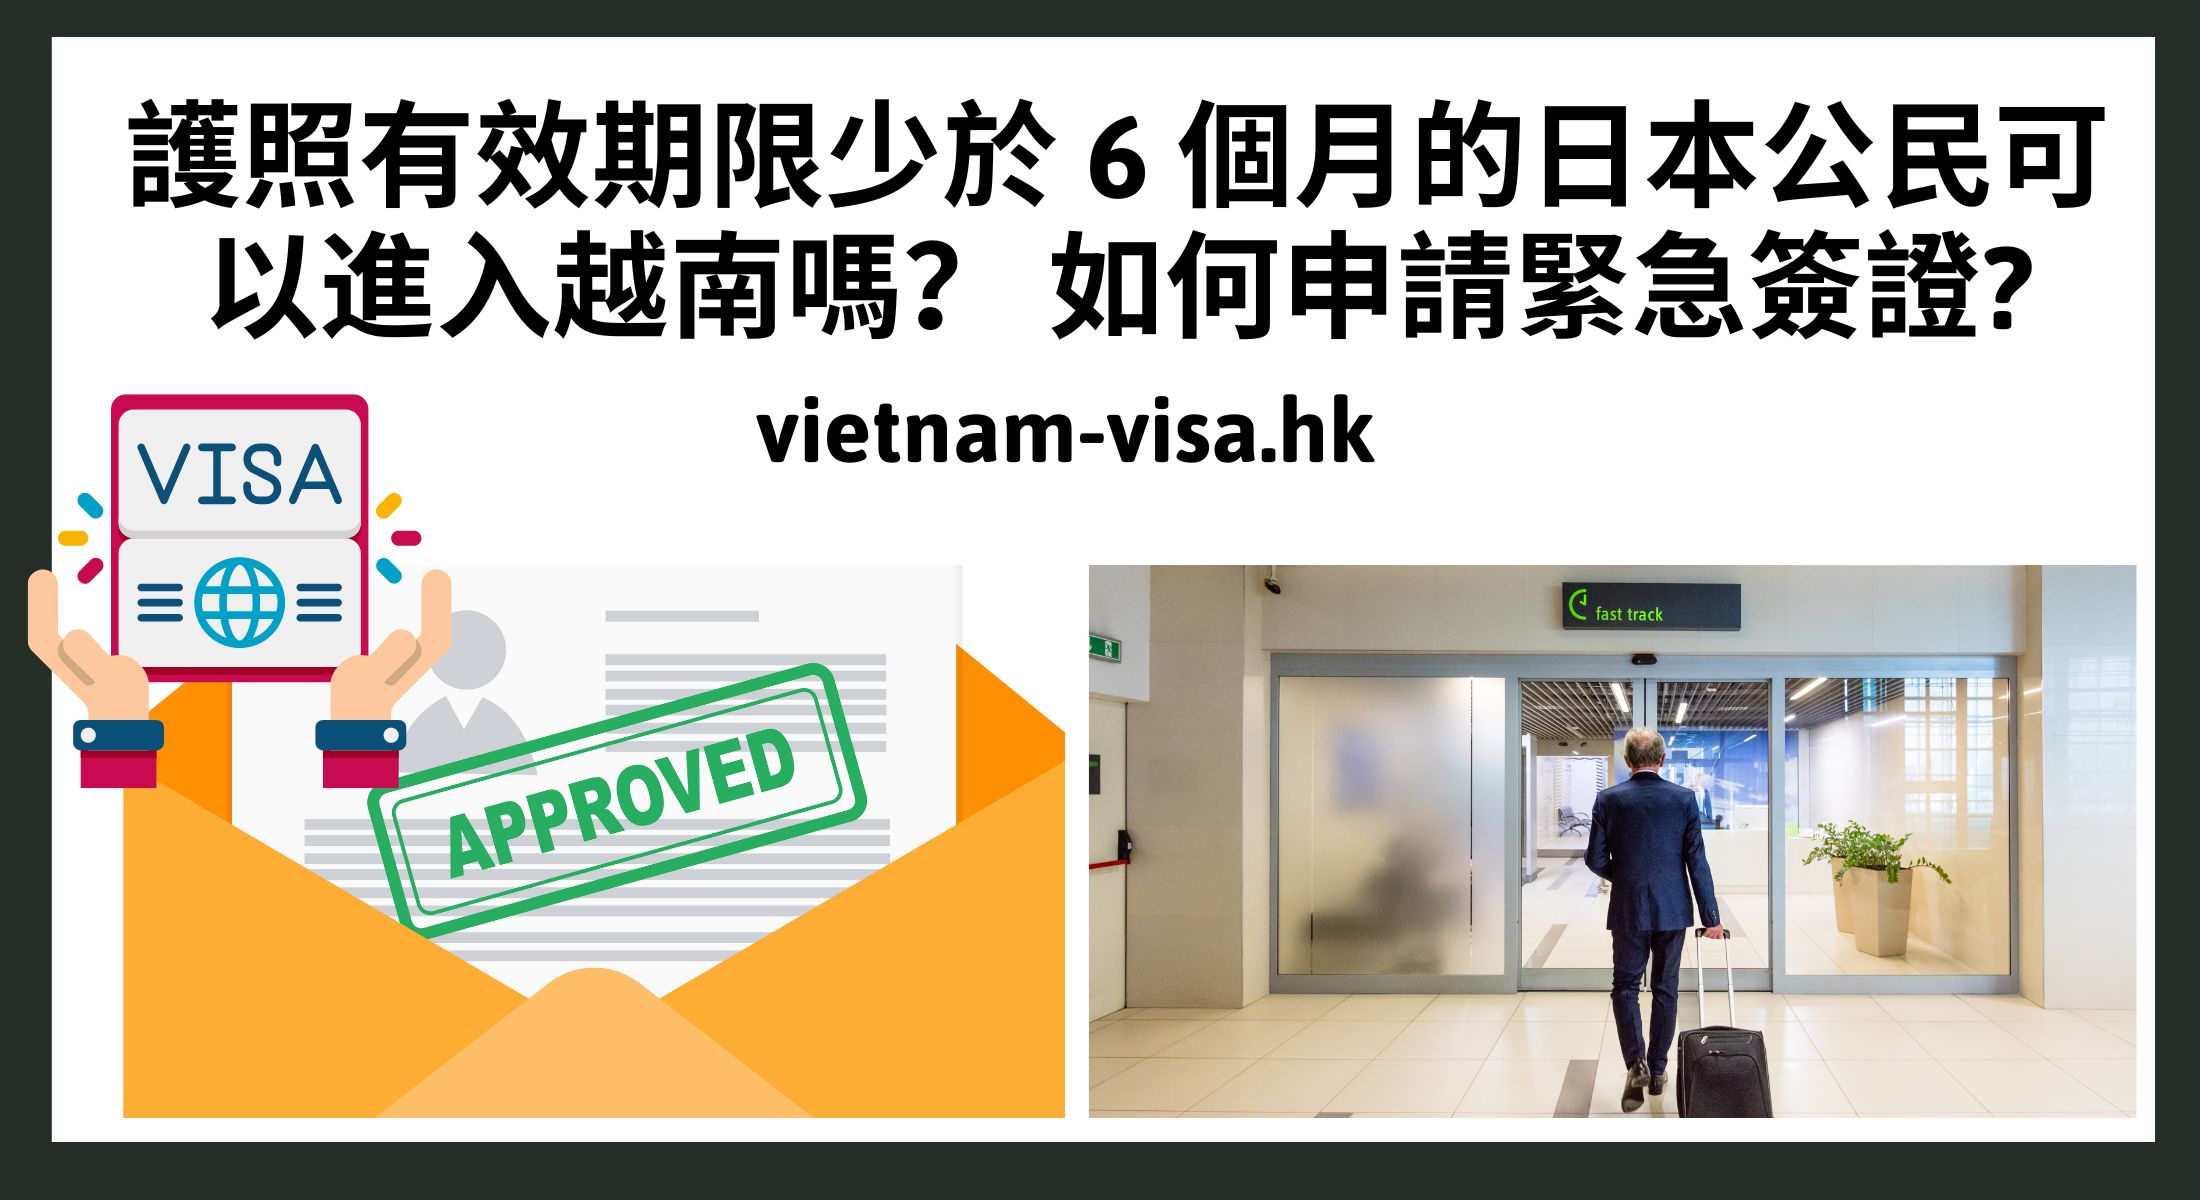 護照有效期限少於 6 個月的日本公民可以進入越南嗎？ 如何申請緊急簽證?